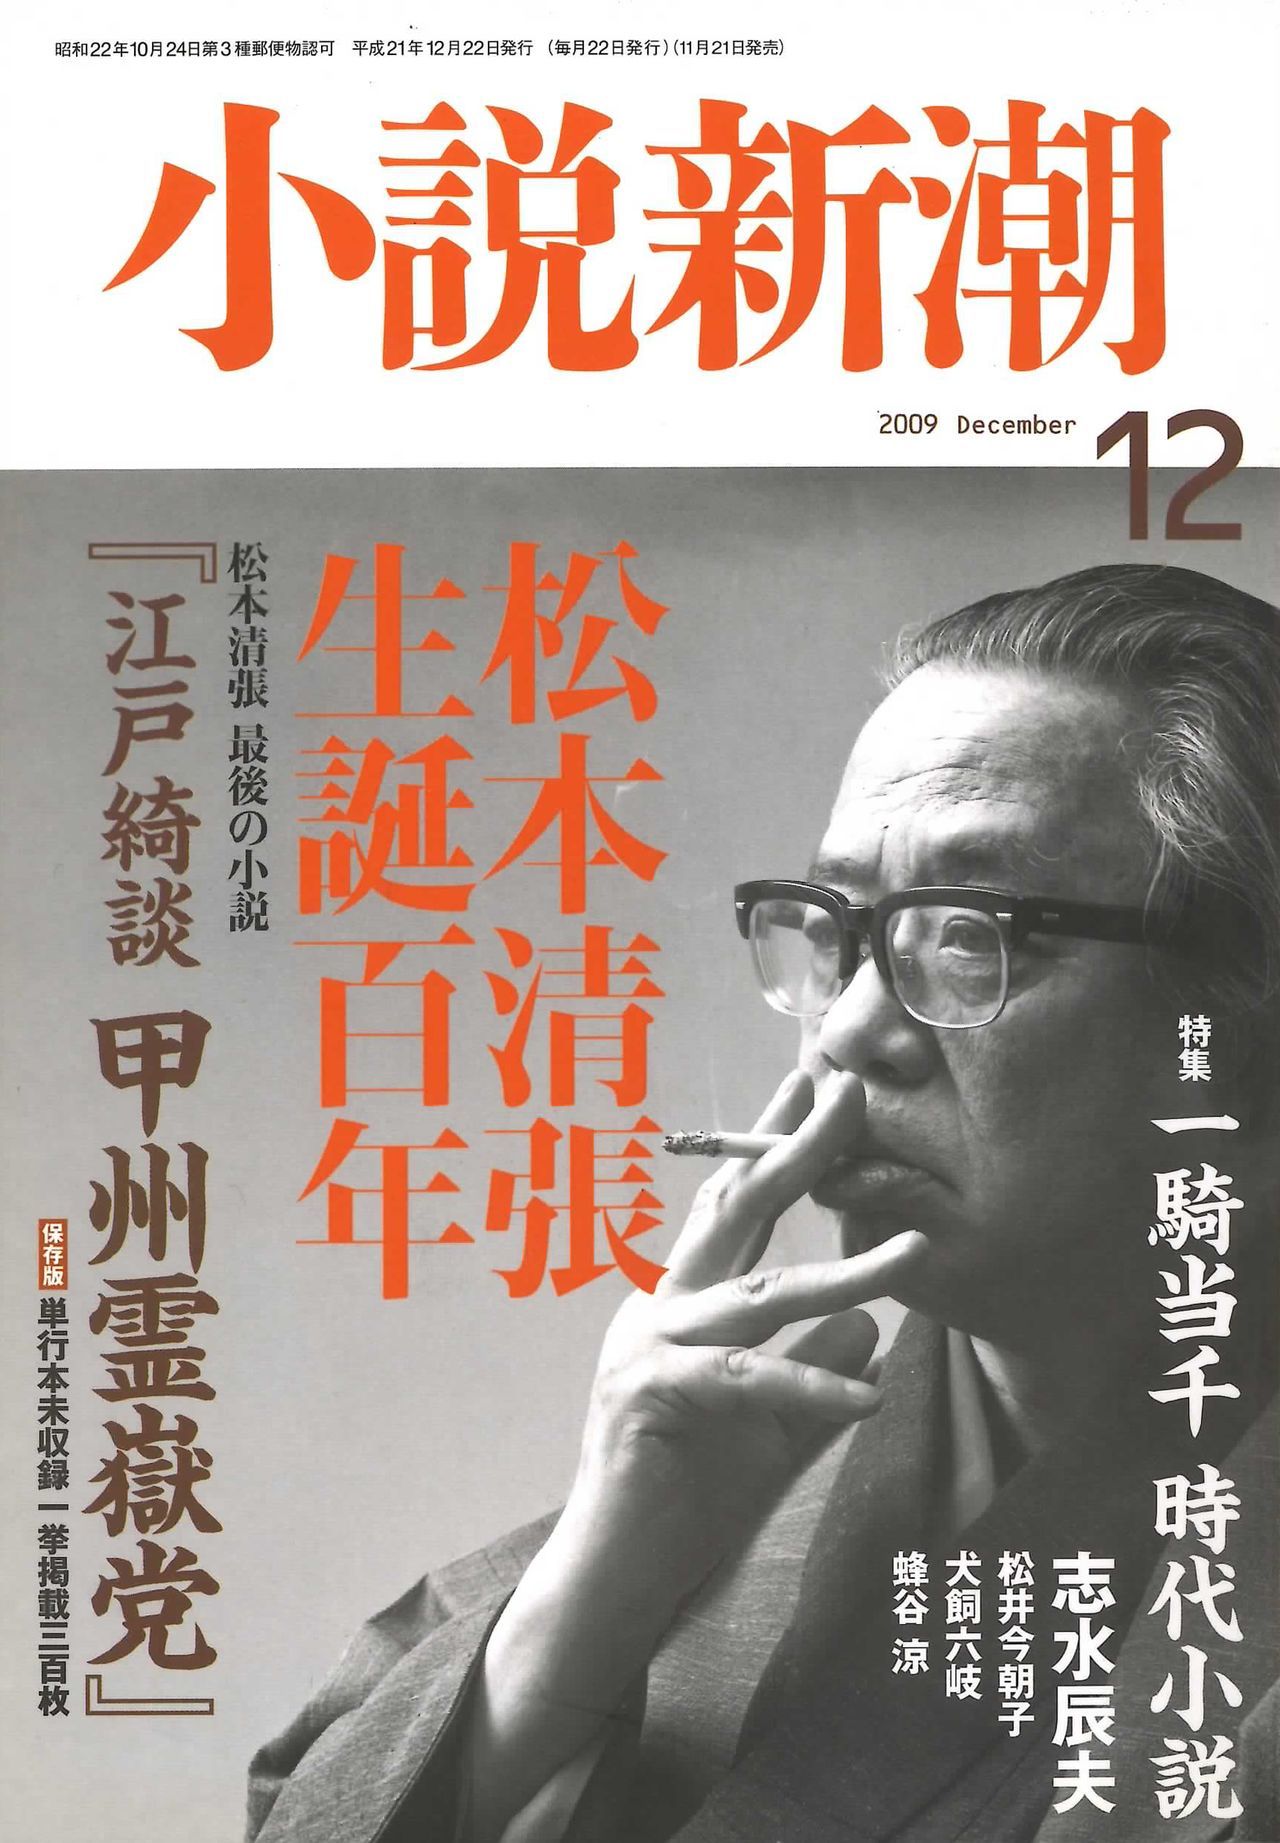 L’édition spéciale de Shôsetsu Shinchô de décembre 2009 pour célébrer le centenaire de la naissance de Matsumoto Seichô